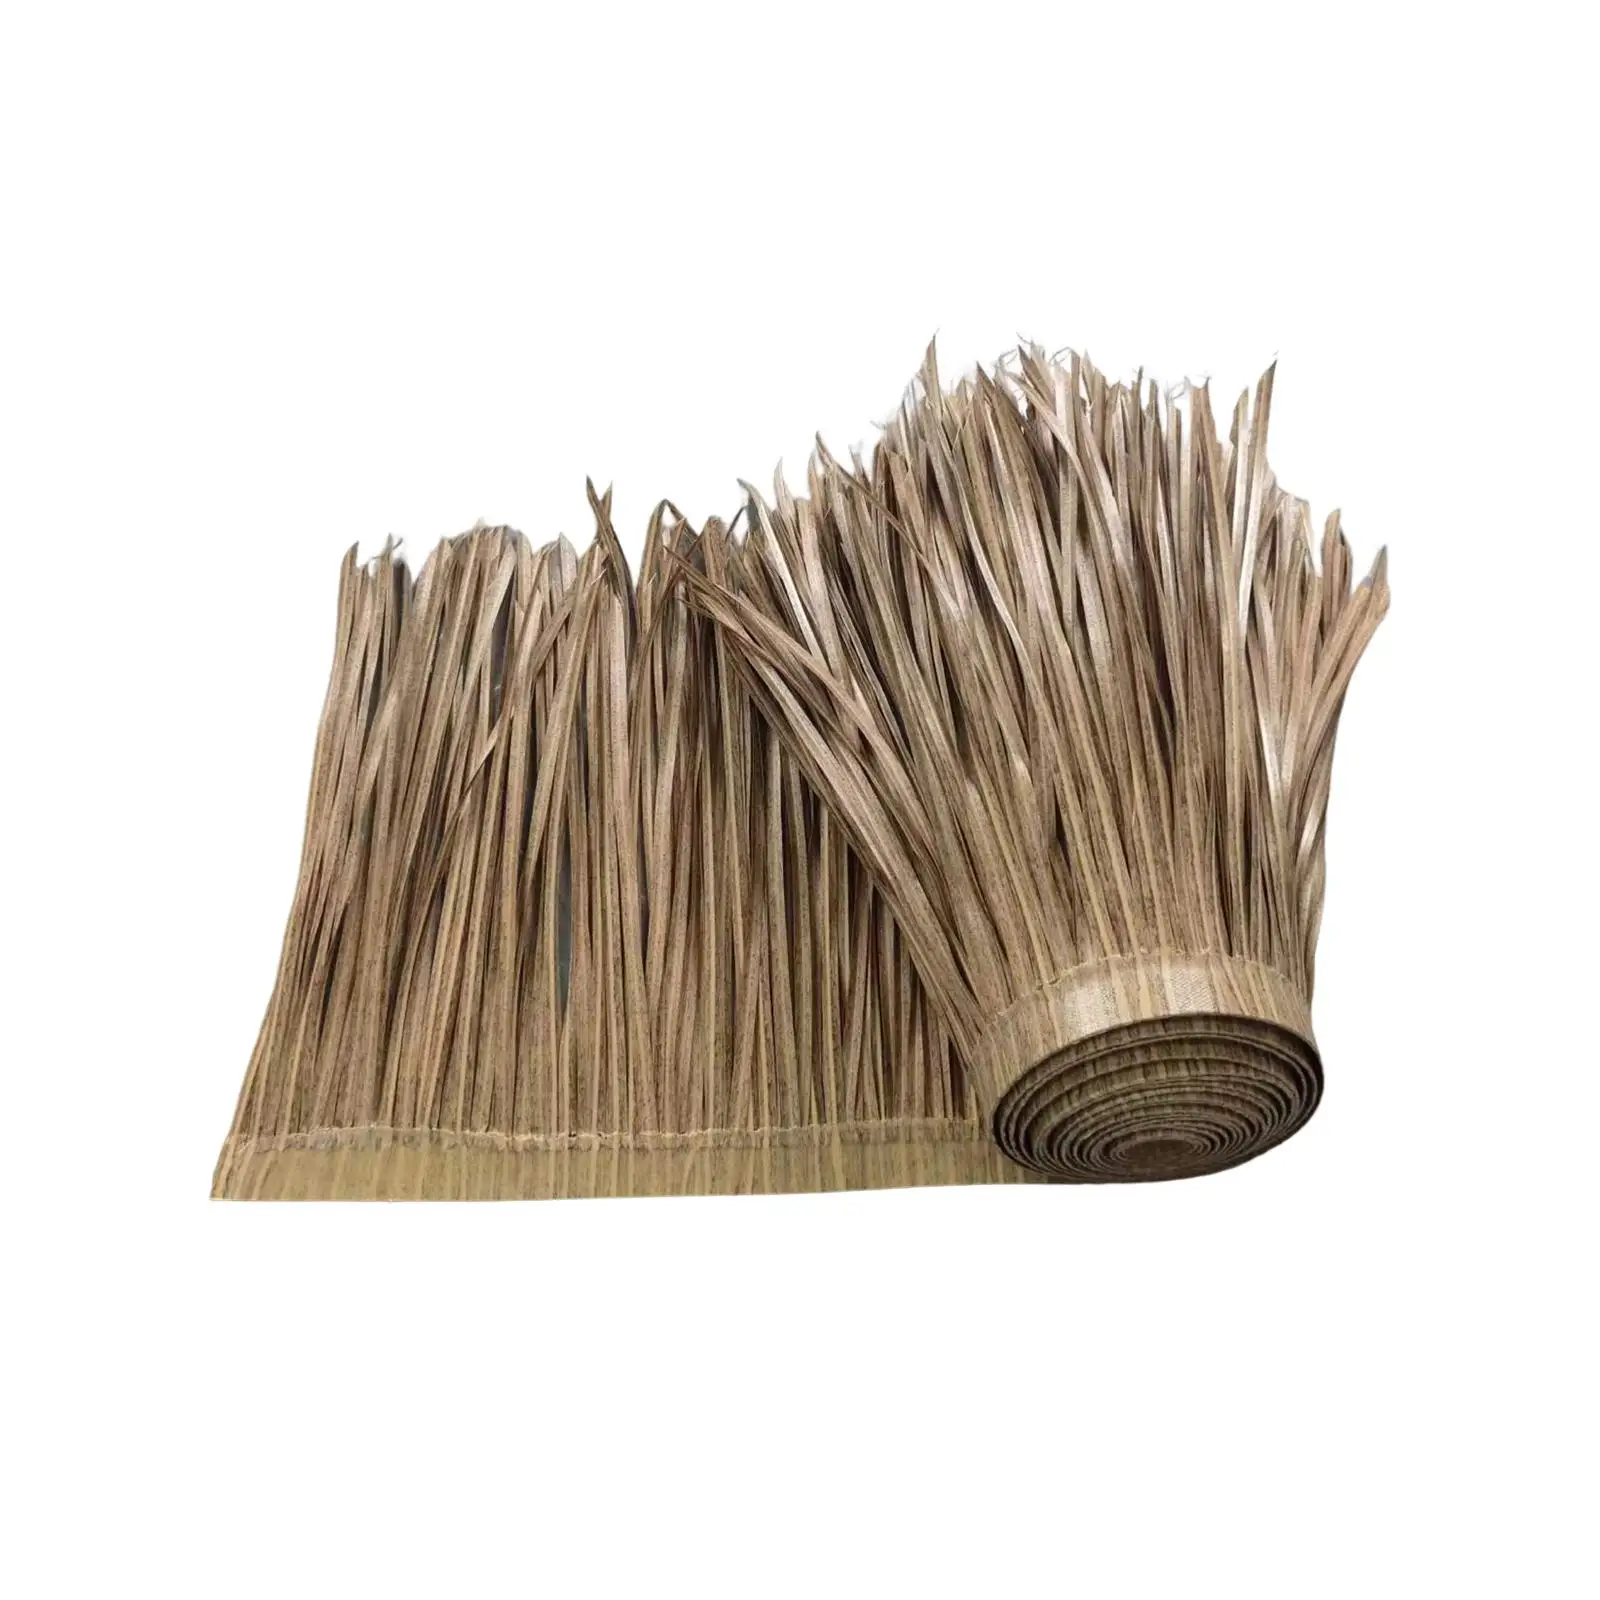 Palm Thatch Roll Grass Thatch Roll Straw Mats Trimming Diy Shutters, Artificial